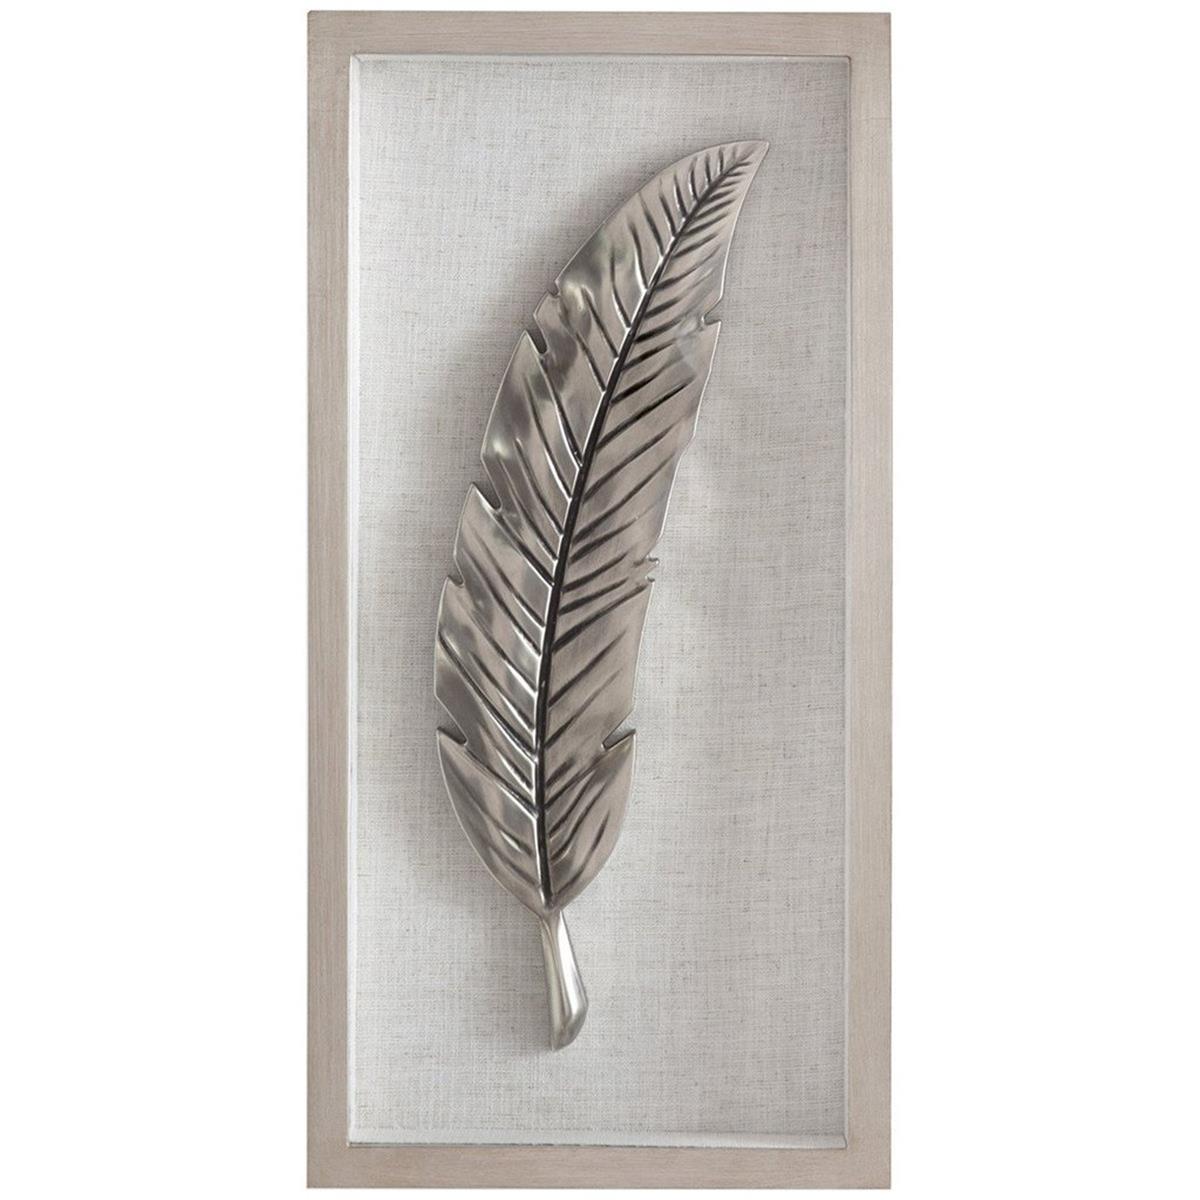 Bassett Mirror 7300-372ec Feather Hanging Wall Art, Silver Leaf